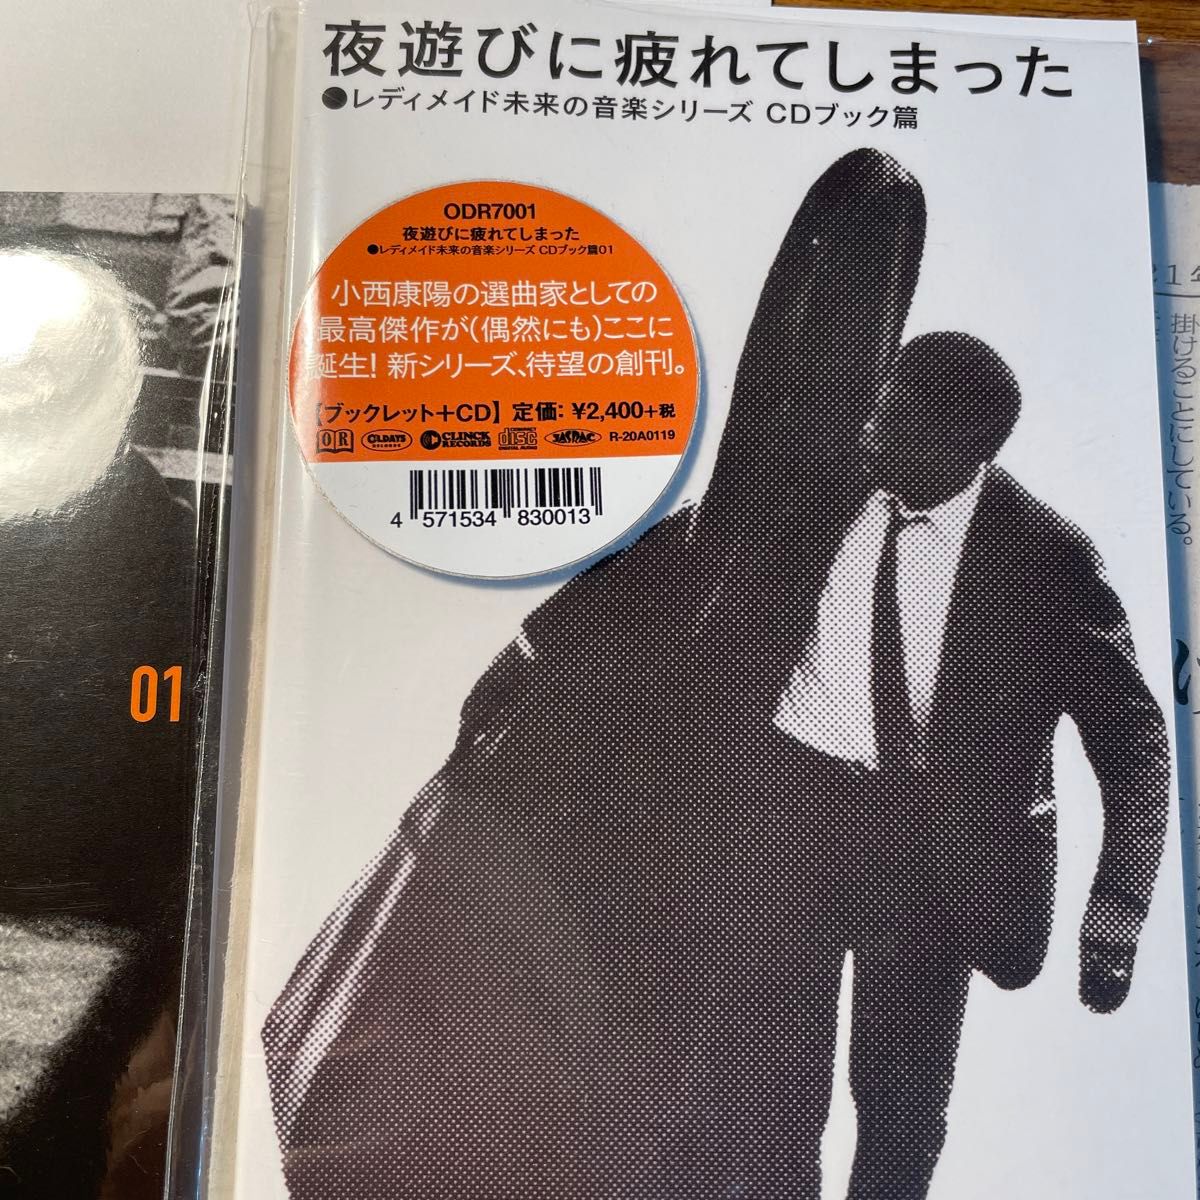 レディメイド未来の音楽シリーズ CDブック篇 01「夜遊びに疲れてしまった」 小西康陽 